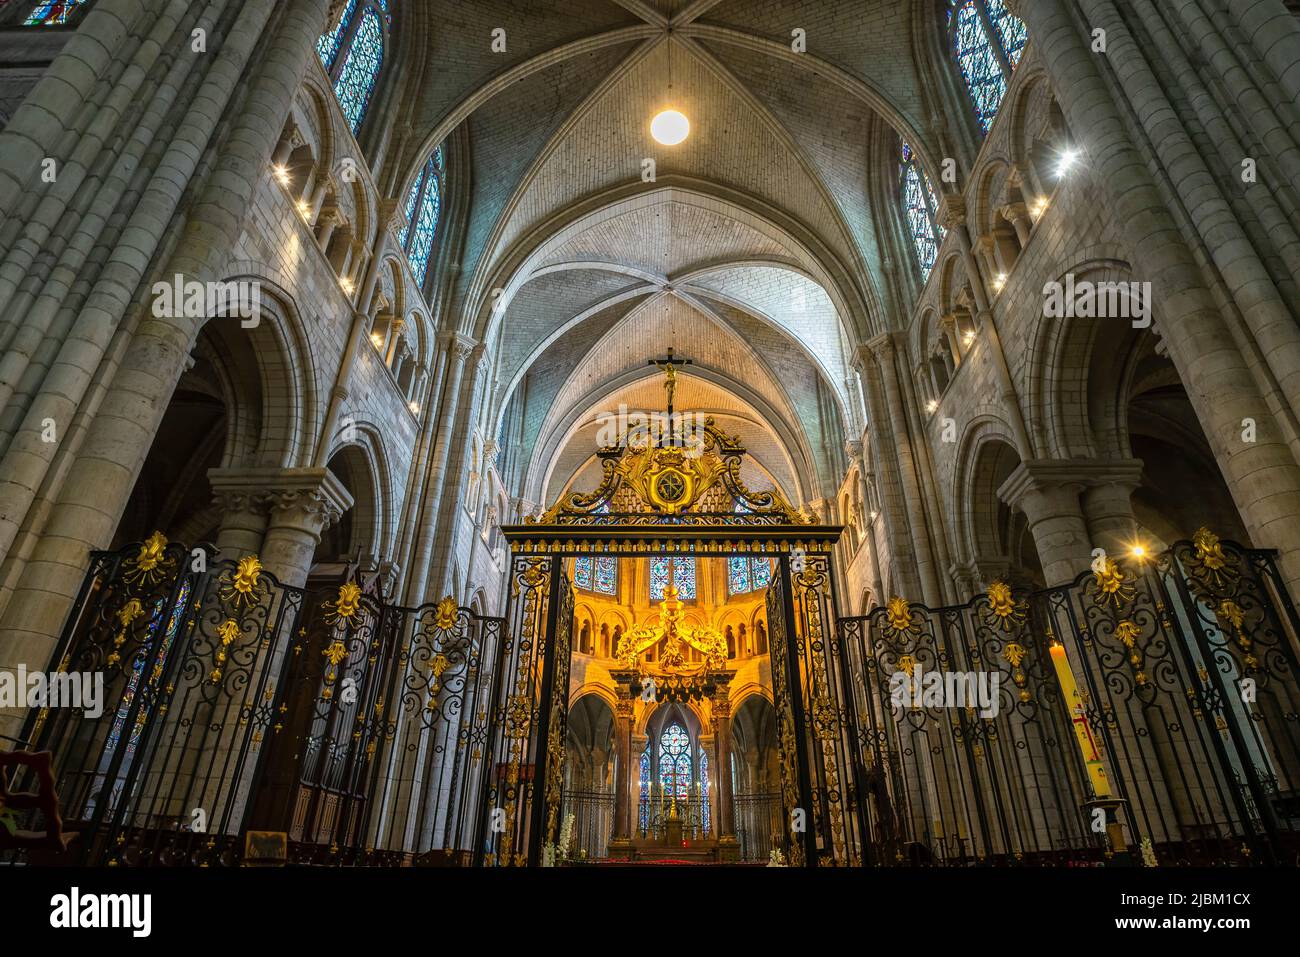 Nave central de la catedral de Sens Saint-Etienne. Sens Cathedral es una catedral católica en Sens, en Borgoña, Francia. Foto de stock